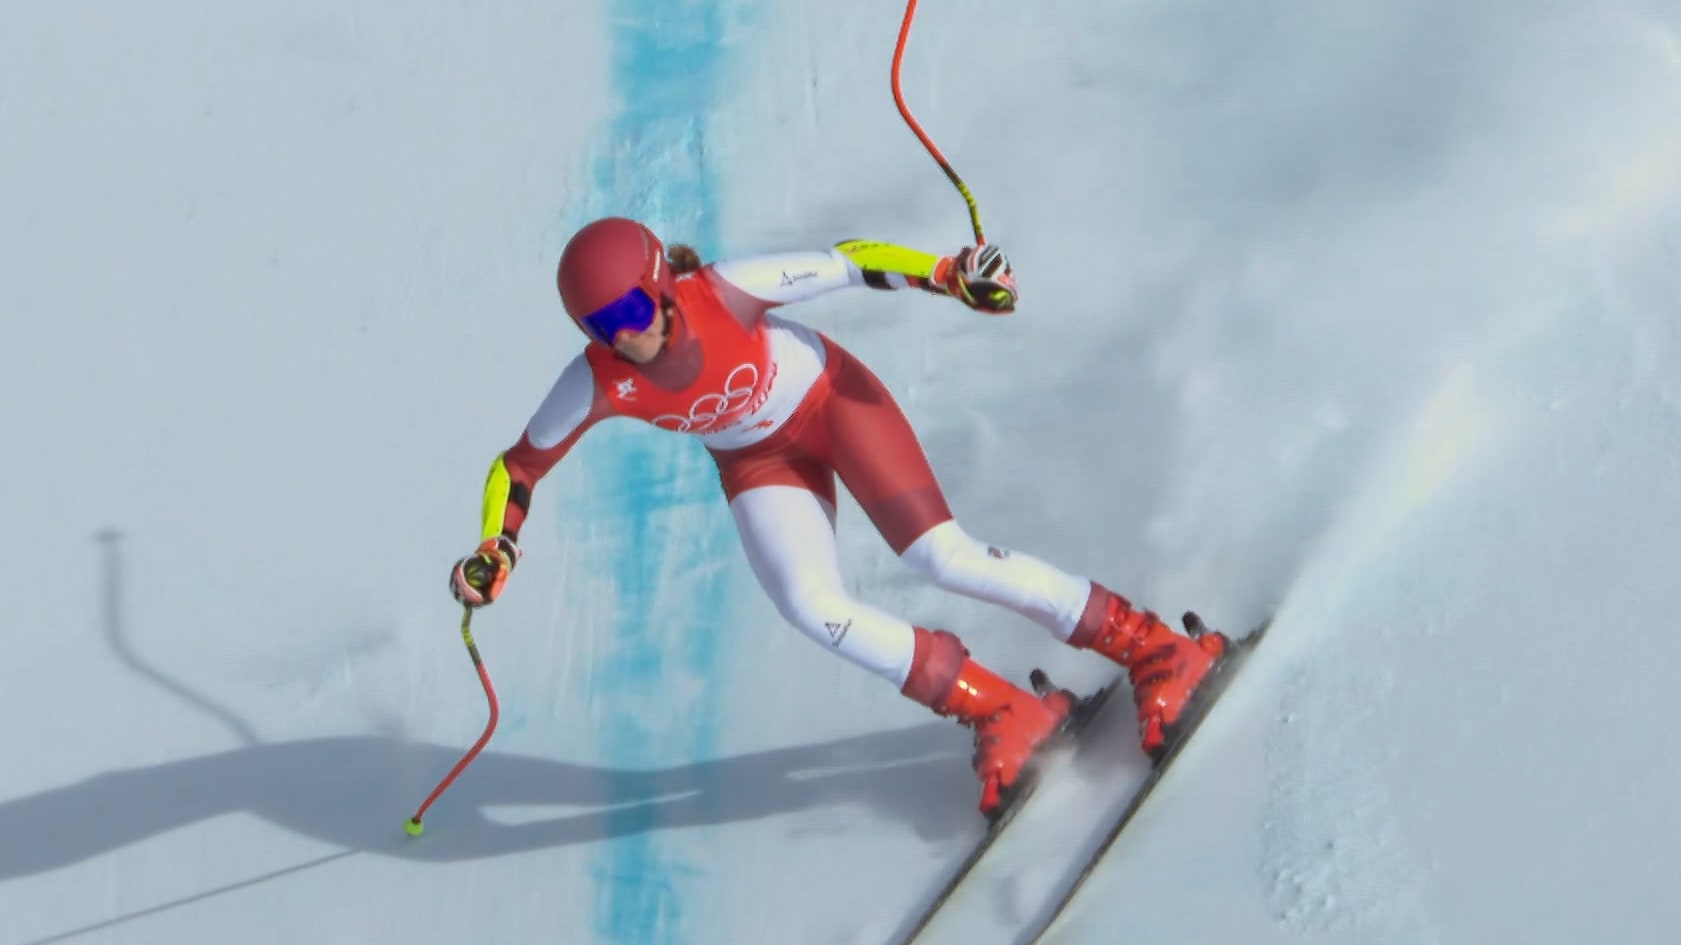 REPORTAGE. Mondiaux de ski alpin 2023 : de reine du luxe à station  sportive, le long chemin de Courchevel pour redessiner son image